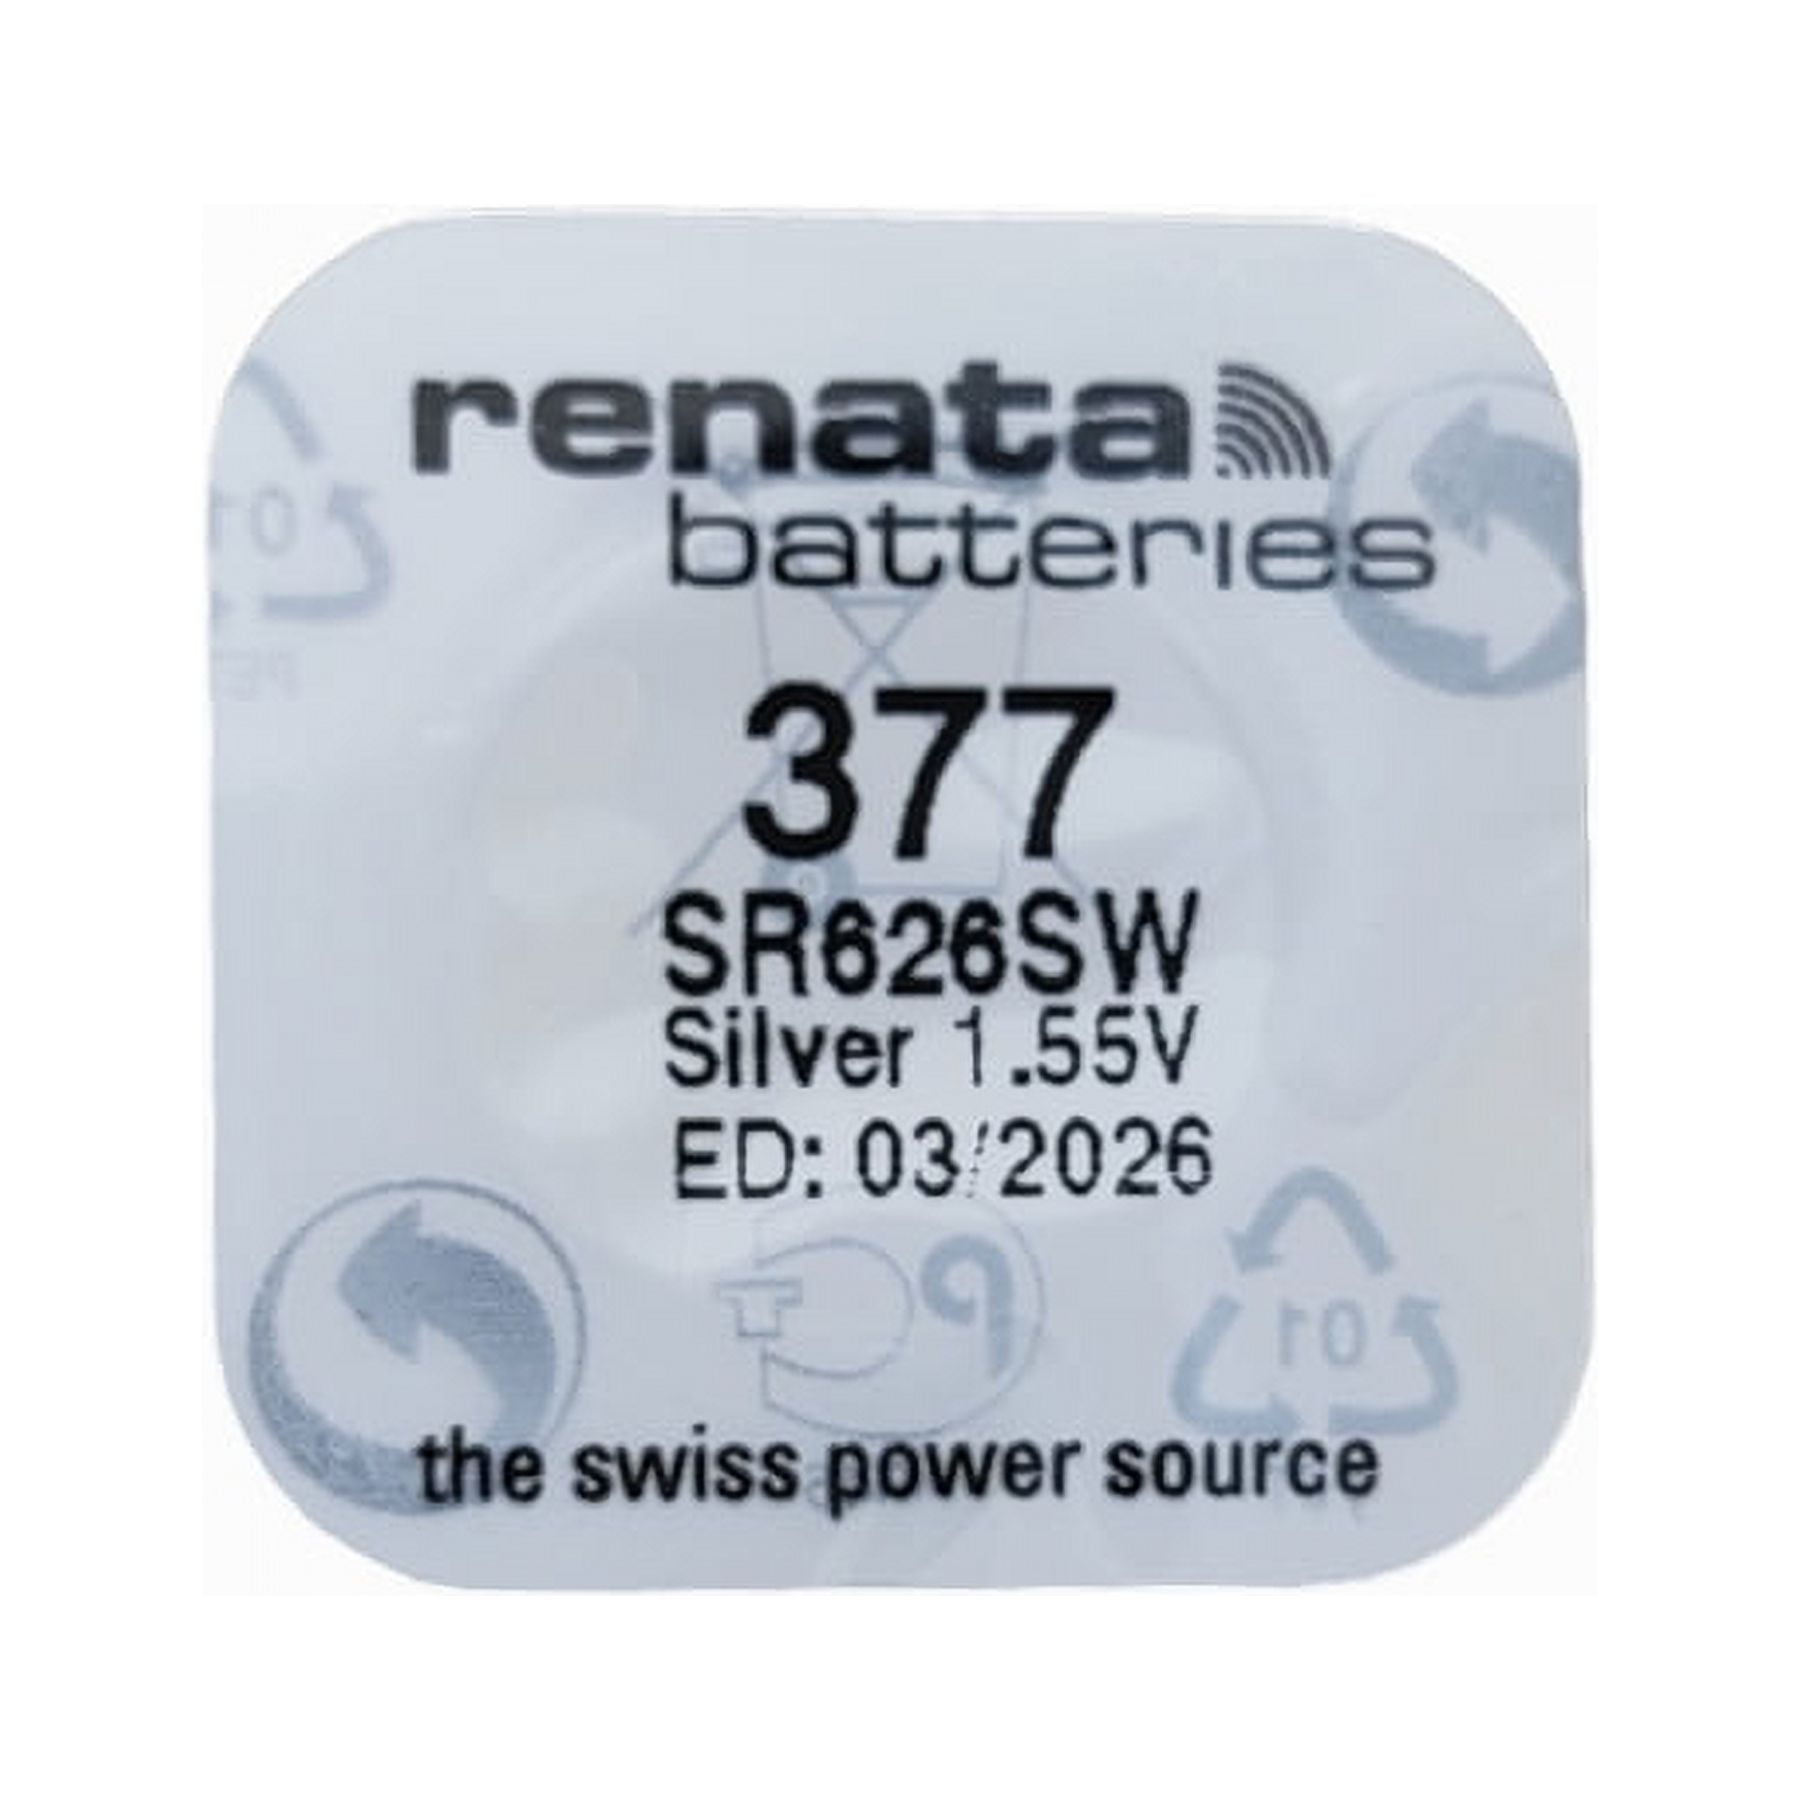 RENATA WATCH BATTERY 1.55V SWISS MADE BATTERIES 377 SR626SW